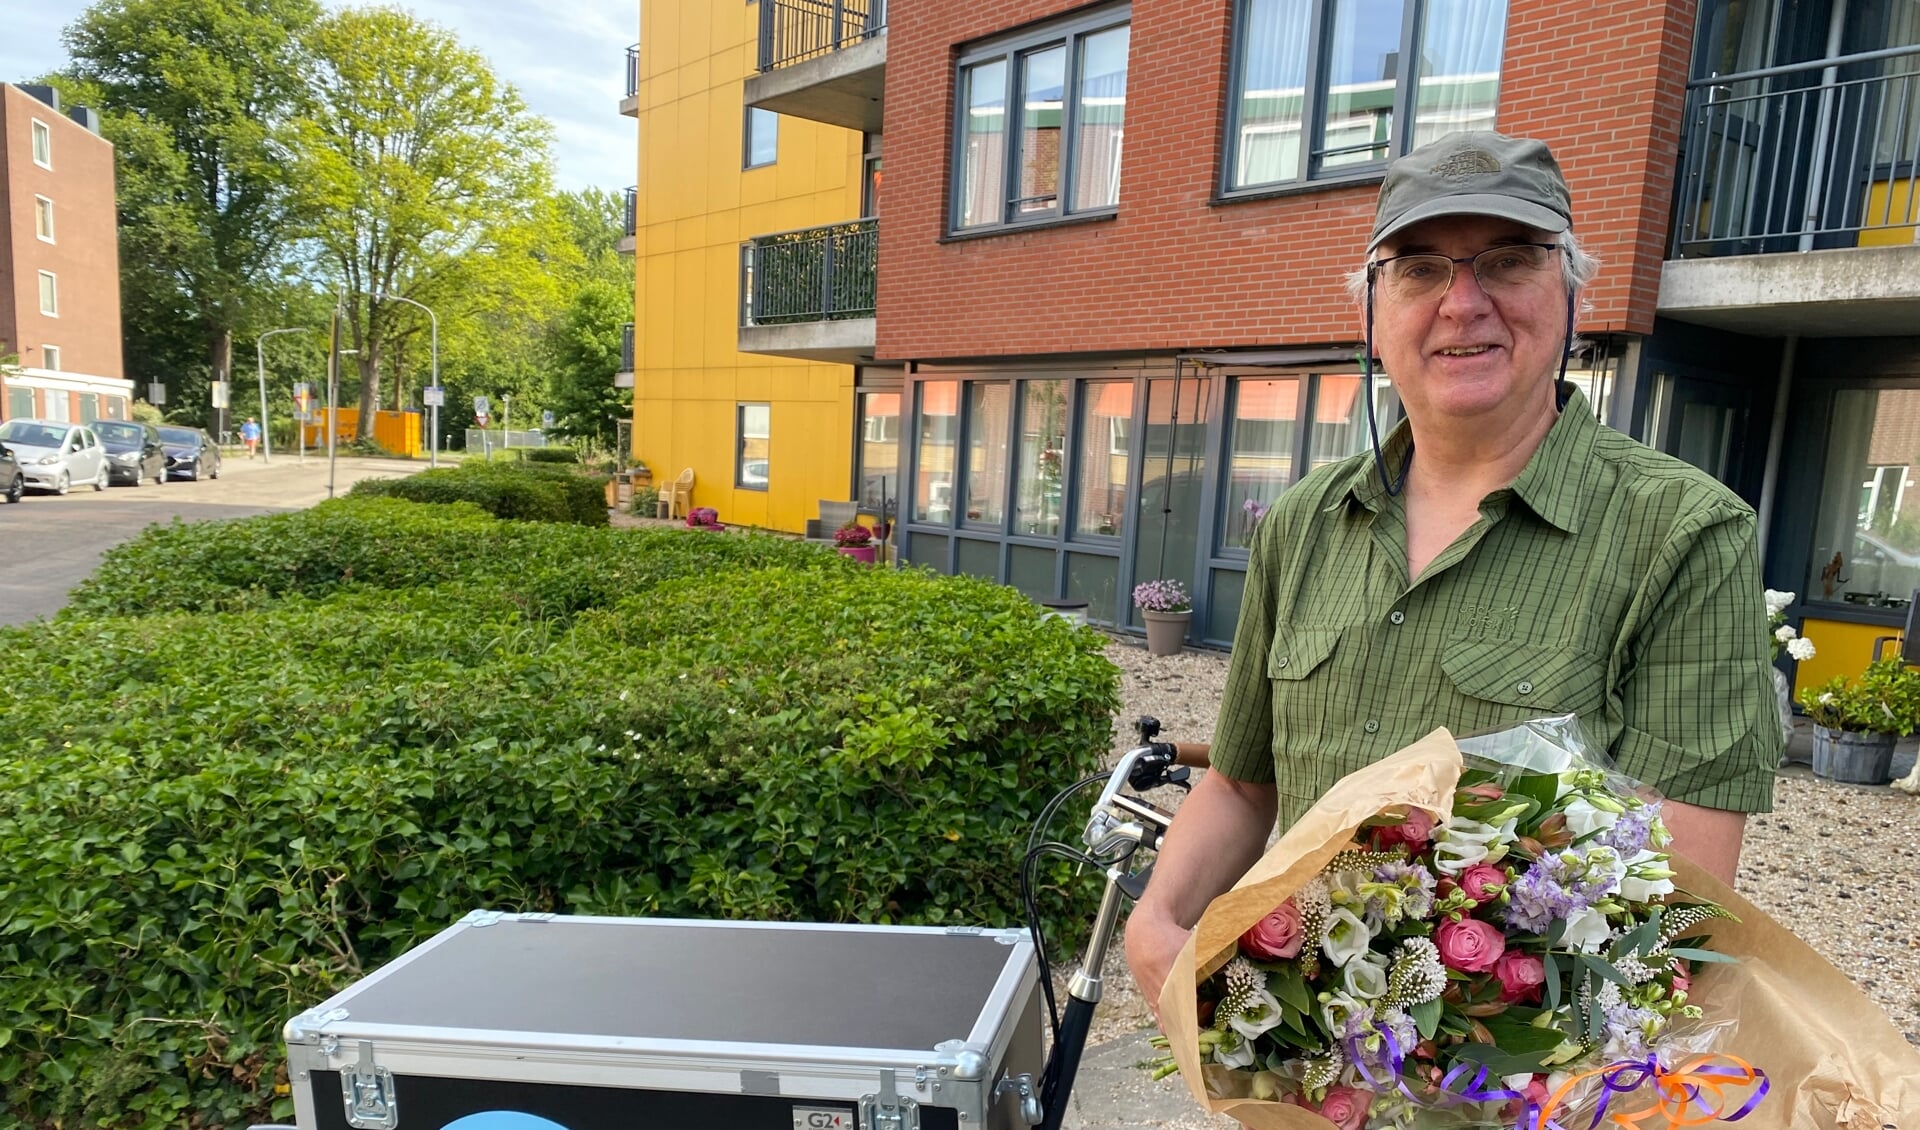 Met de BUUV fiets op pad naar de vrijwilligers. Dit is Fred van der Loo met een mooie bos bloemen.